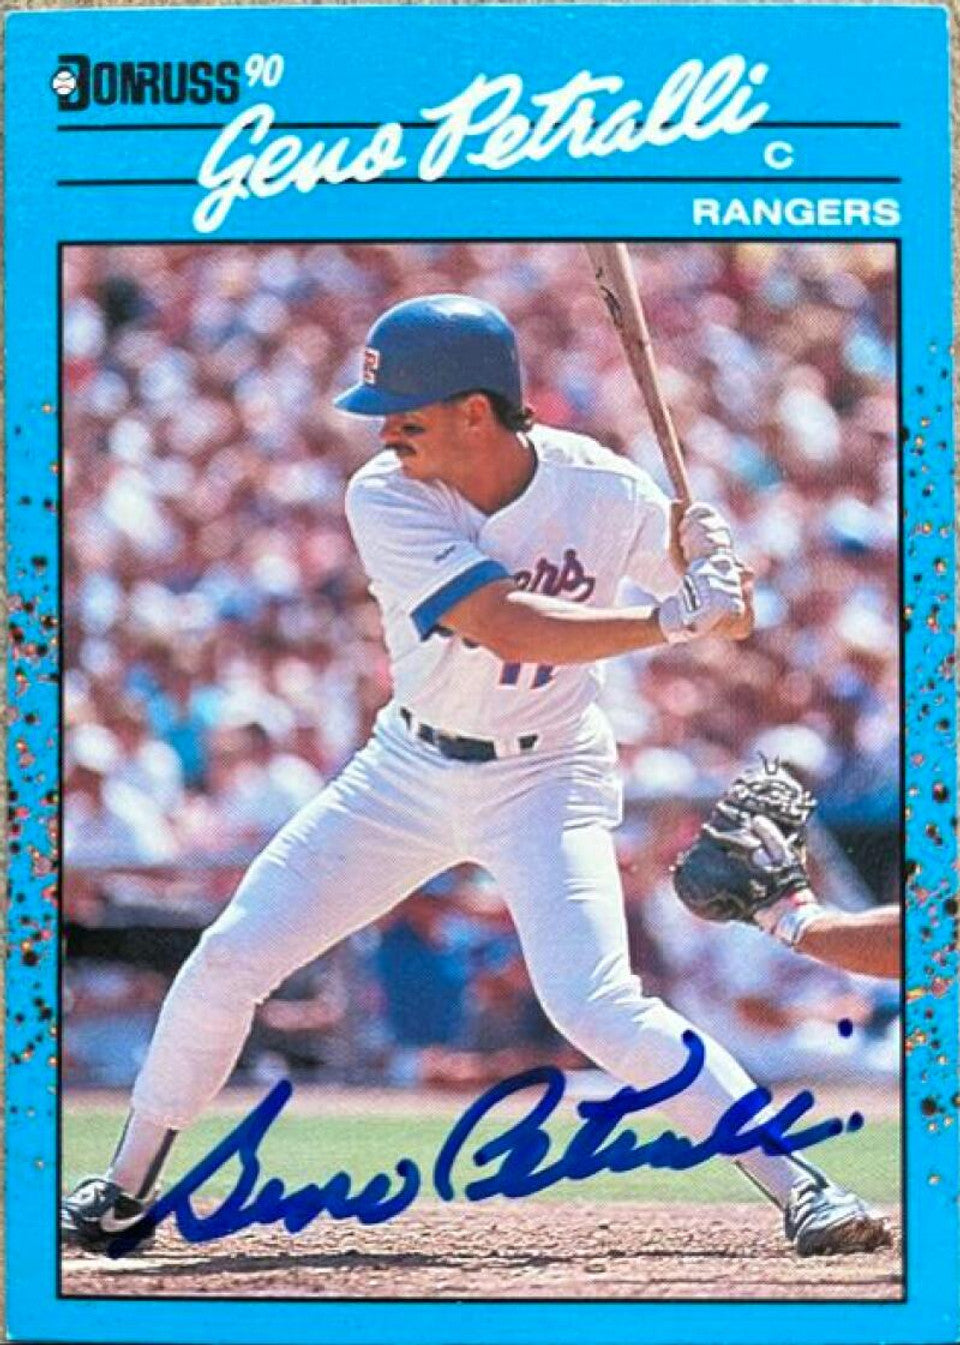 ジェノ・ペトラッリが1990年ドンラス・ベスト・オブ・ザ・ア・リーグ野球カードに署名 - テキサス・レンジャーズ